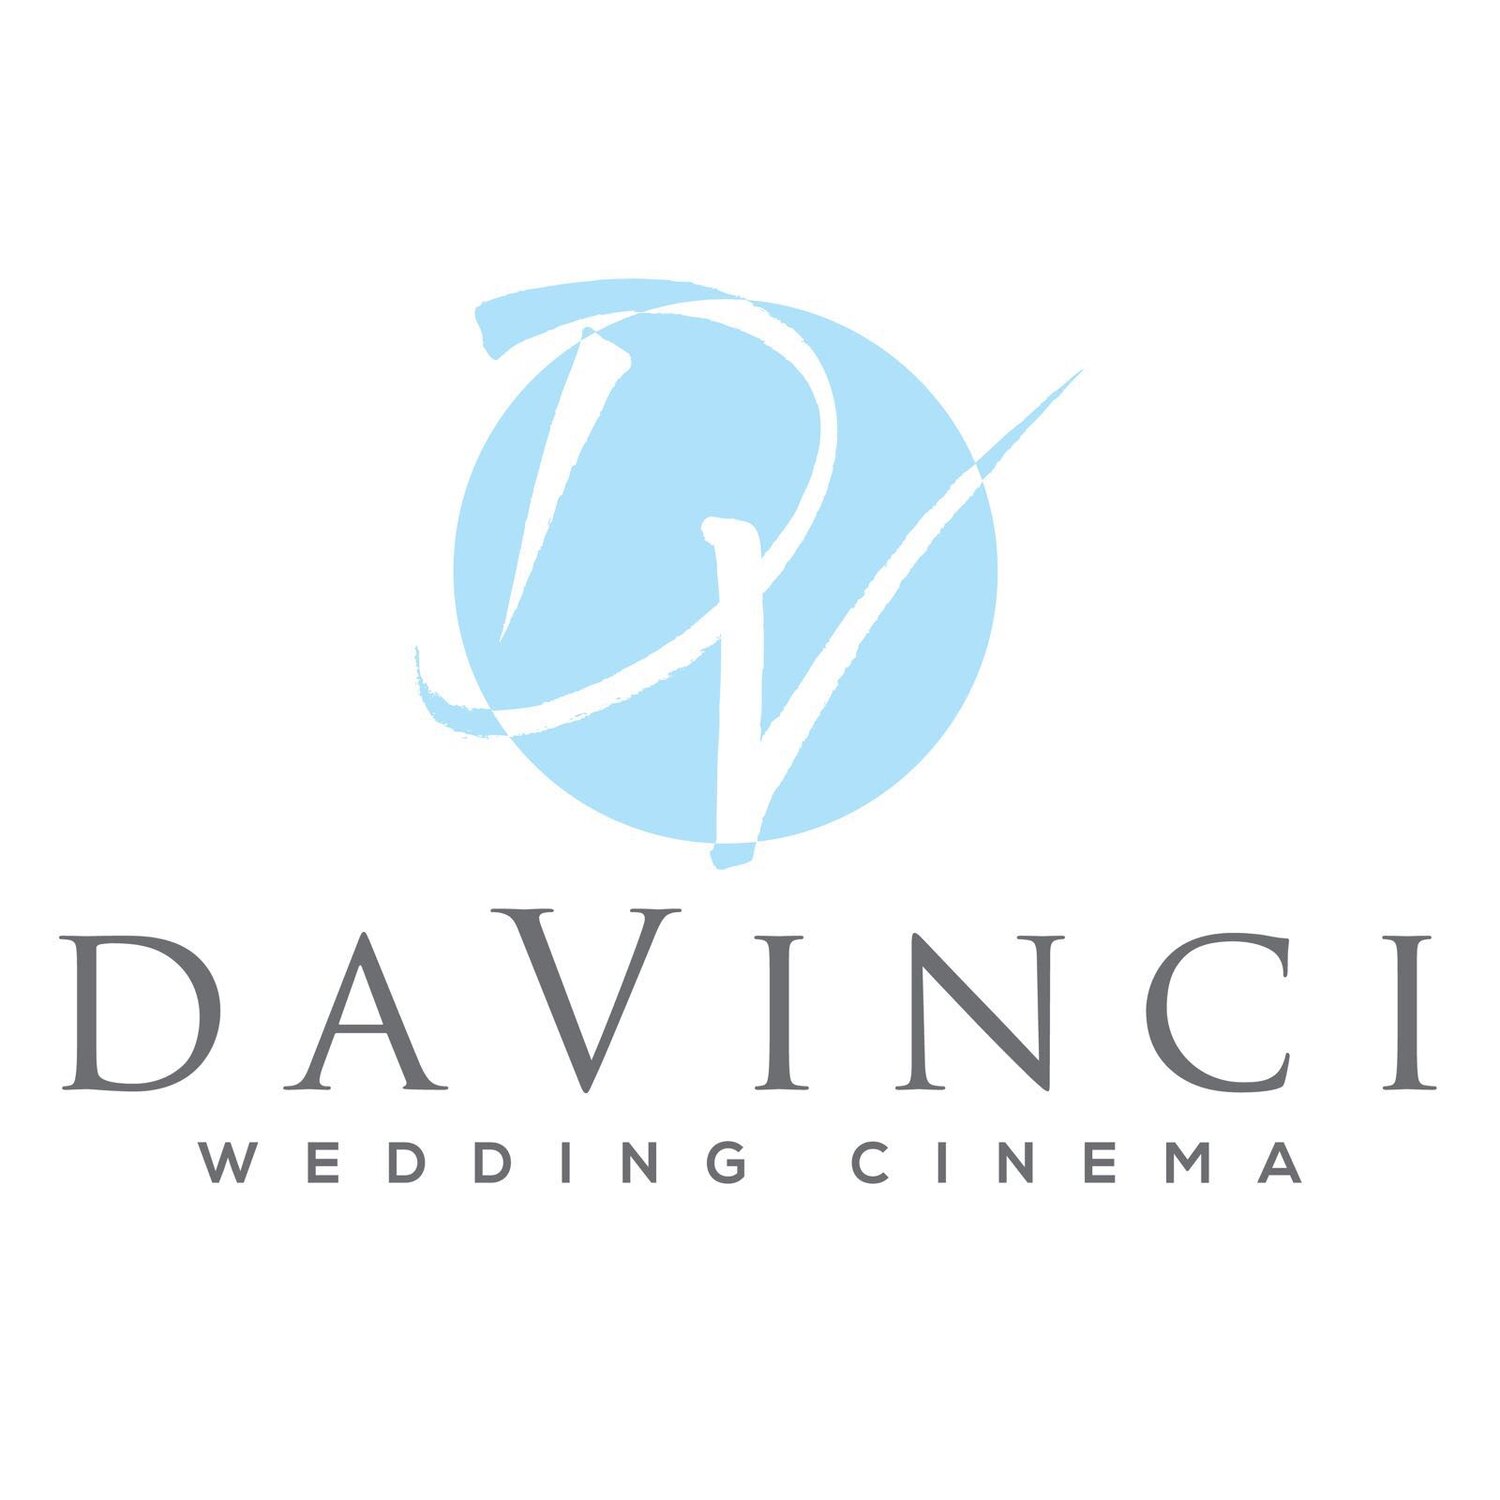 DaVinci Wedding Cinema